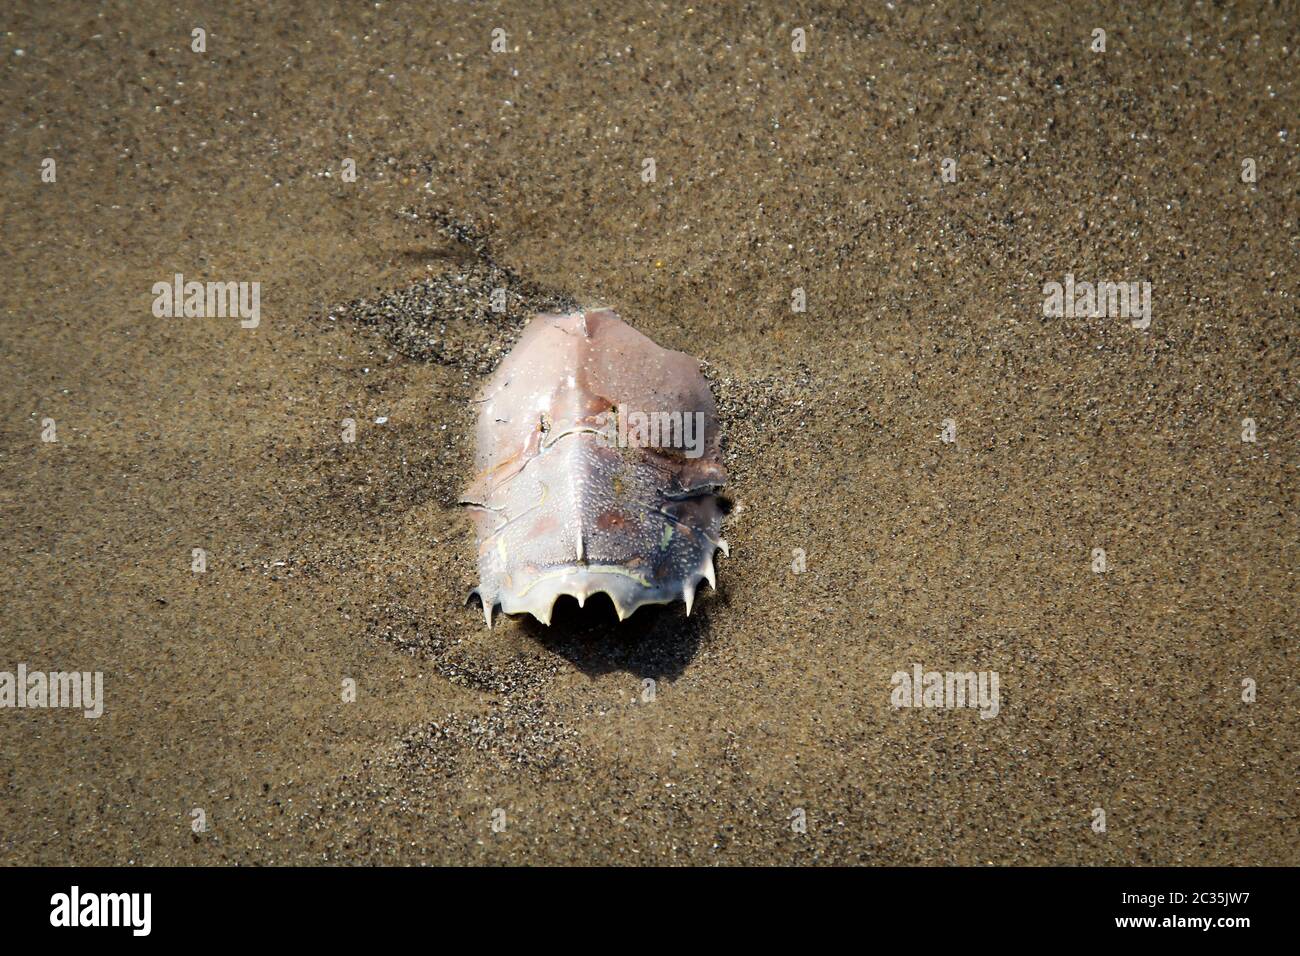 Detalles, restos de un crustáceo, cangrejo, la cáscara de un crustáceo Foto de stock